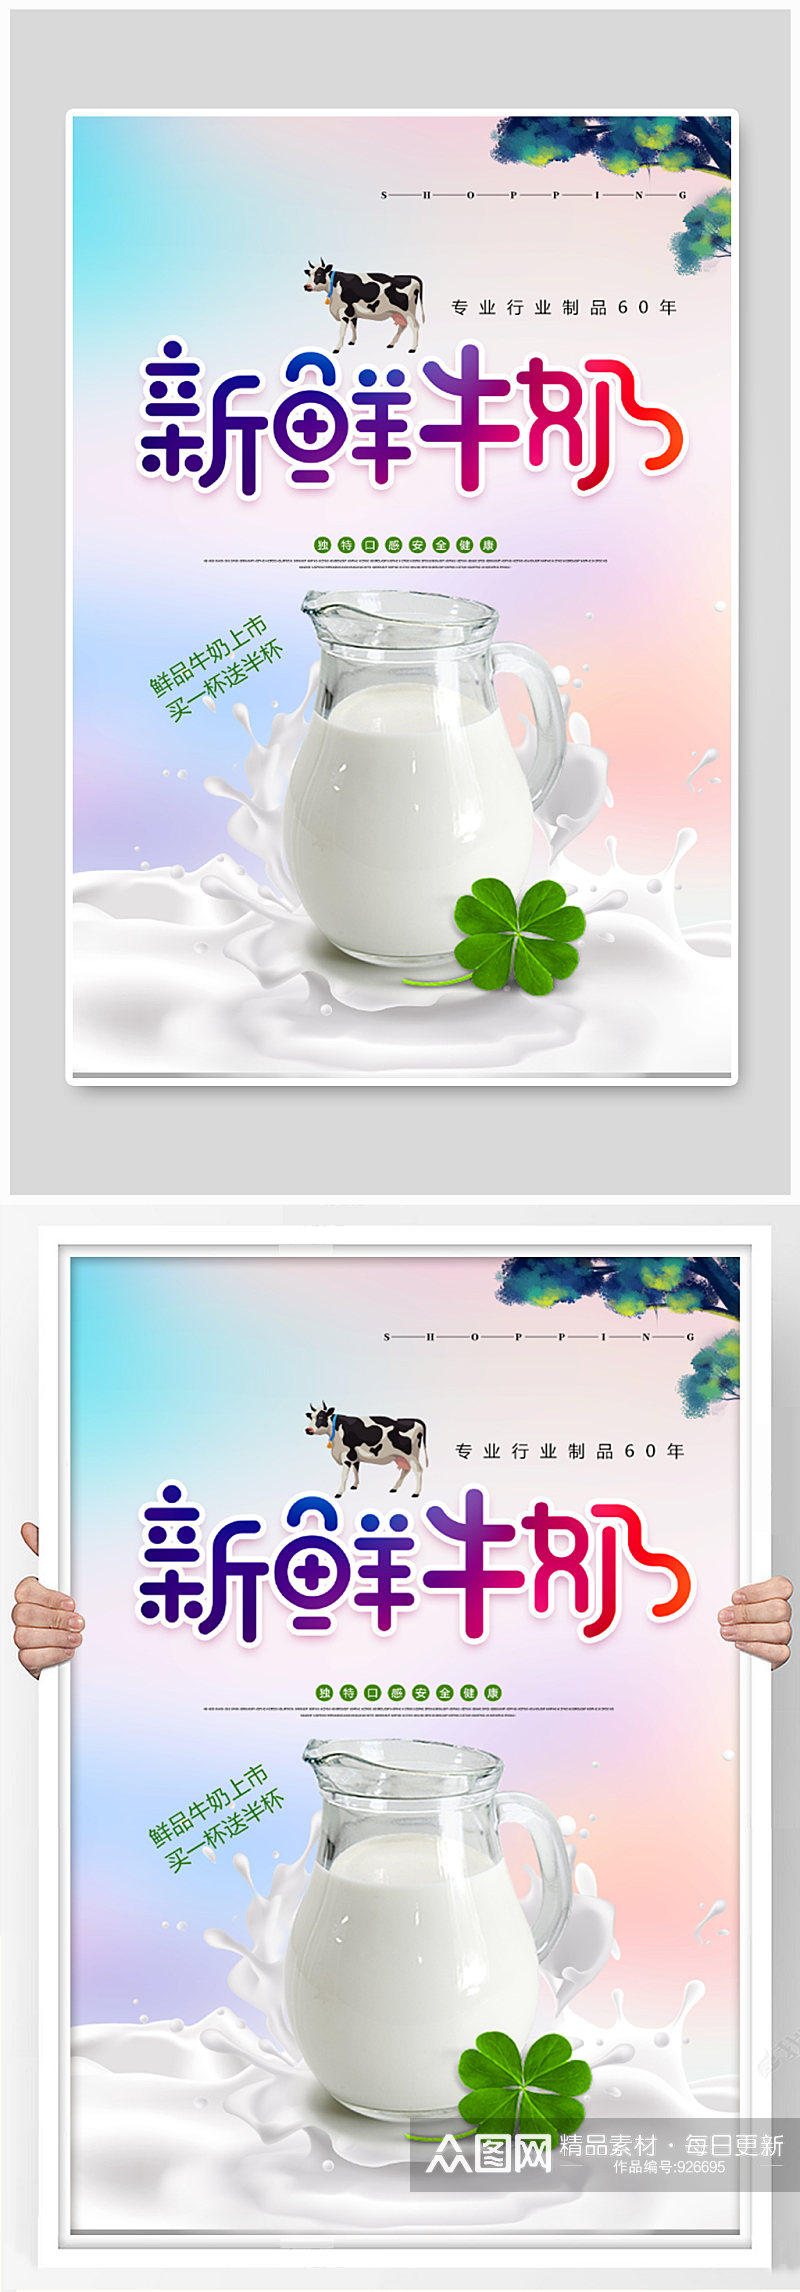 新鲜牛奶宣传海报设计素材